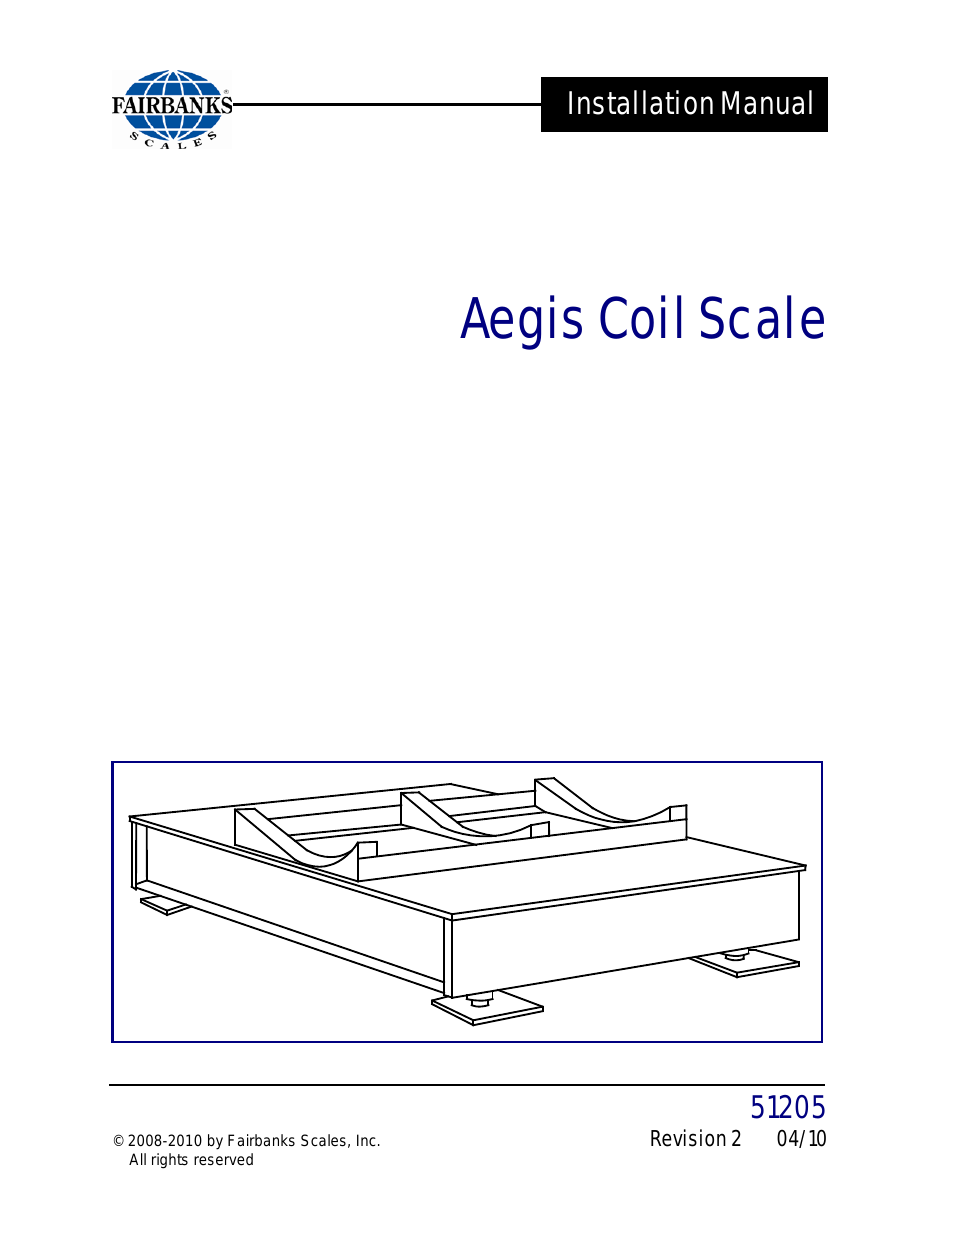 Aegis Coil Scales